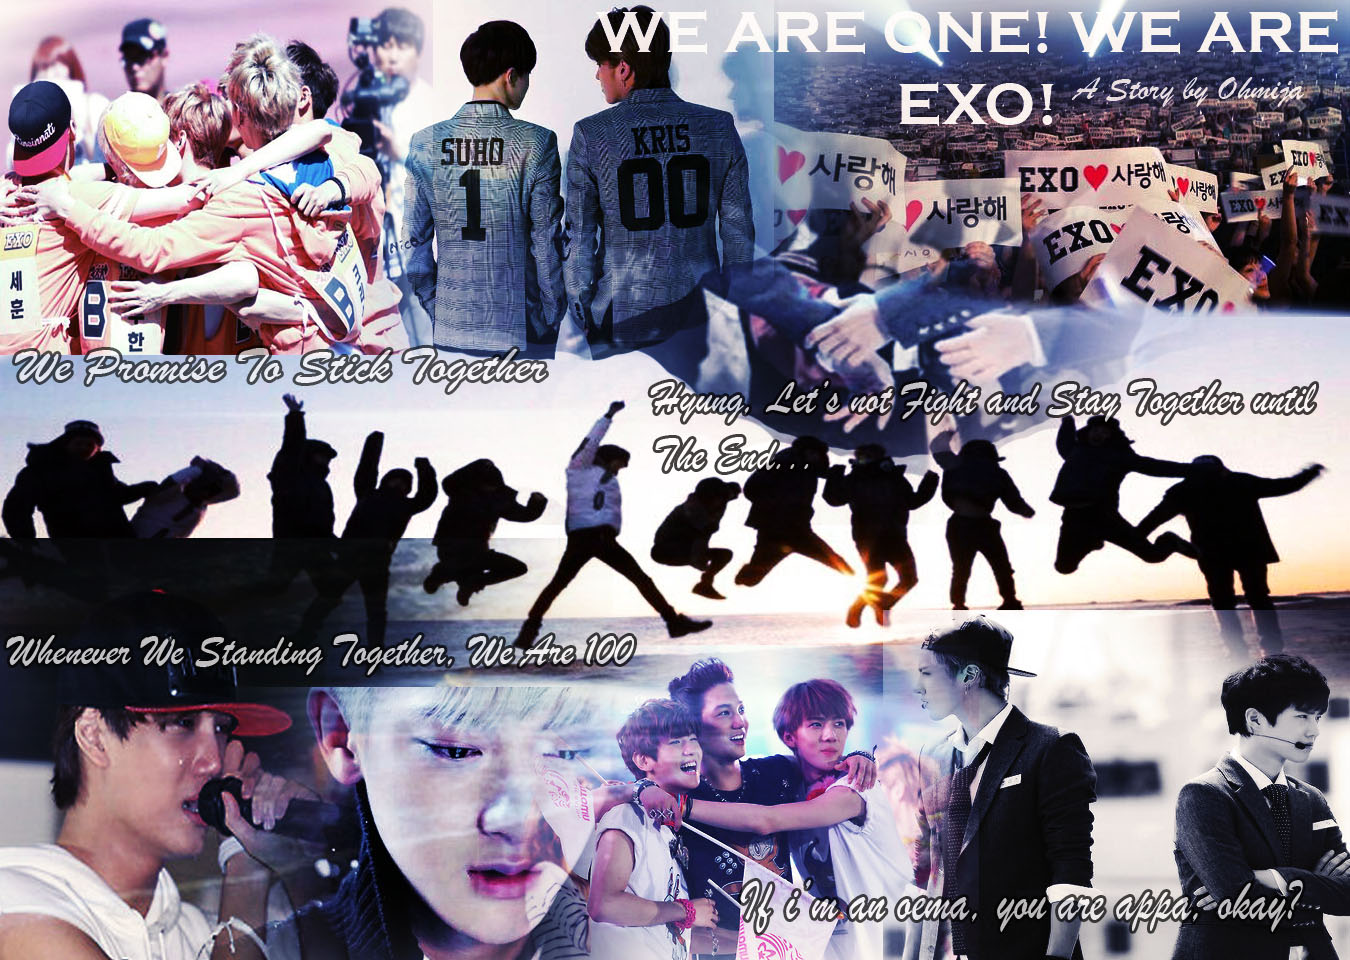 We Are One We Are EXO Chapt 2 Koreadansaya